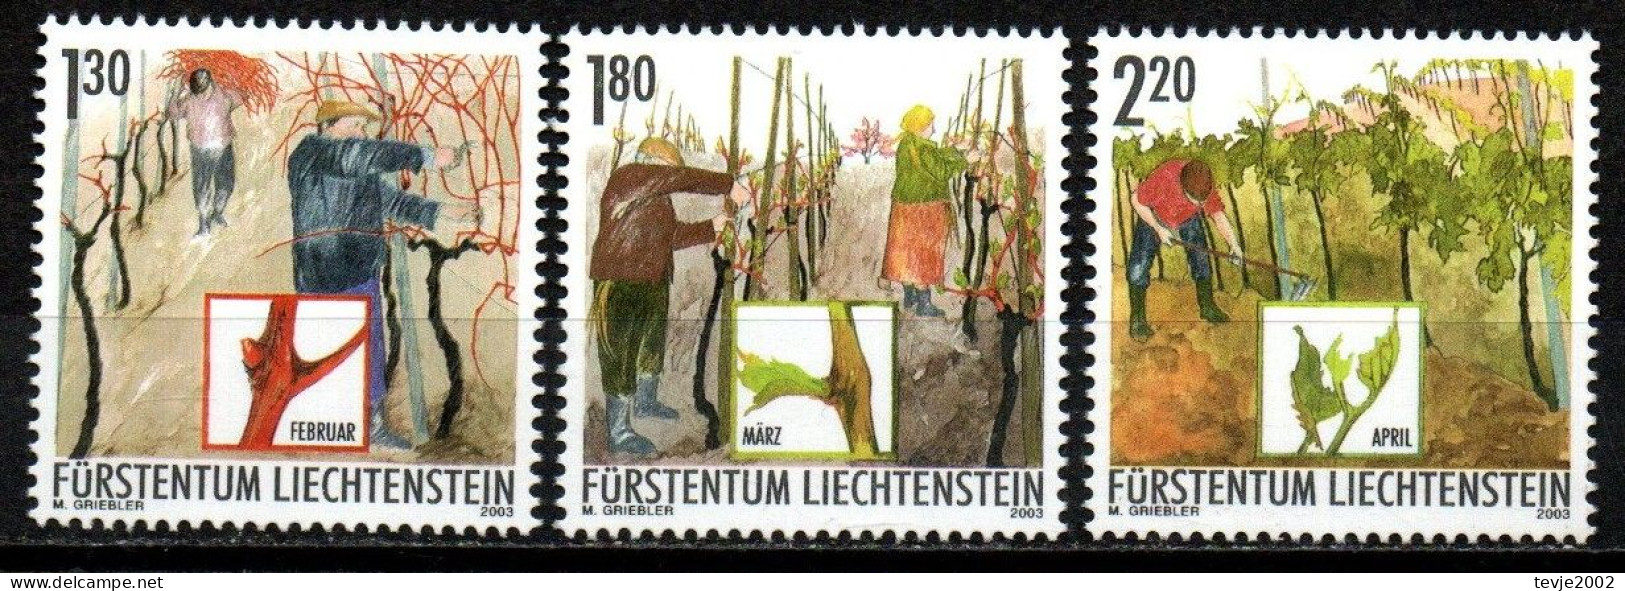 Liechtenstein 2003 - Mi.Nr. 1311 - 1313 - Postfrisch MNH - Weinbau Winzer Wine Growing Winemaker - Landbouw